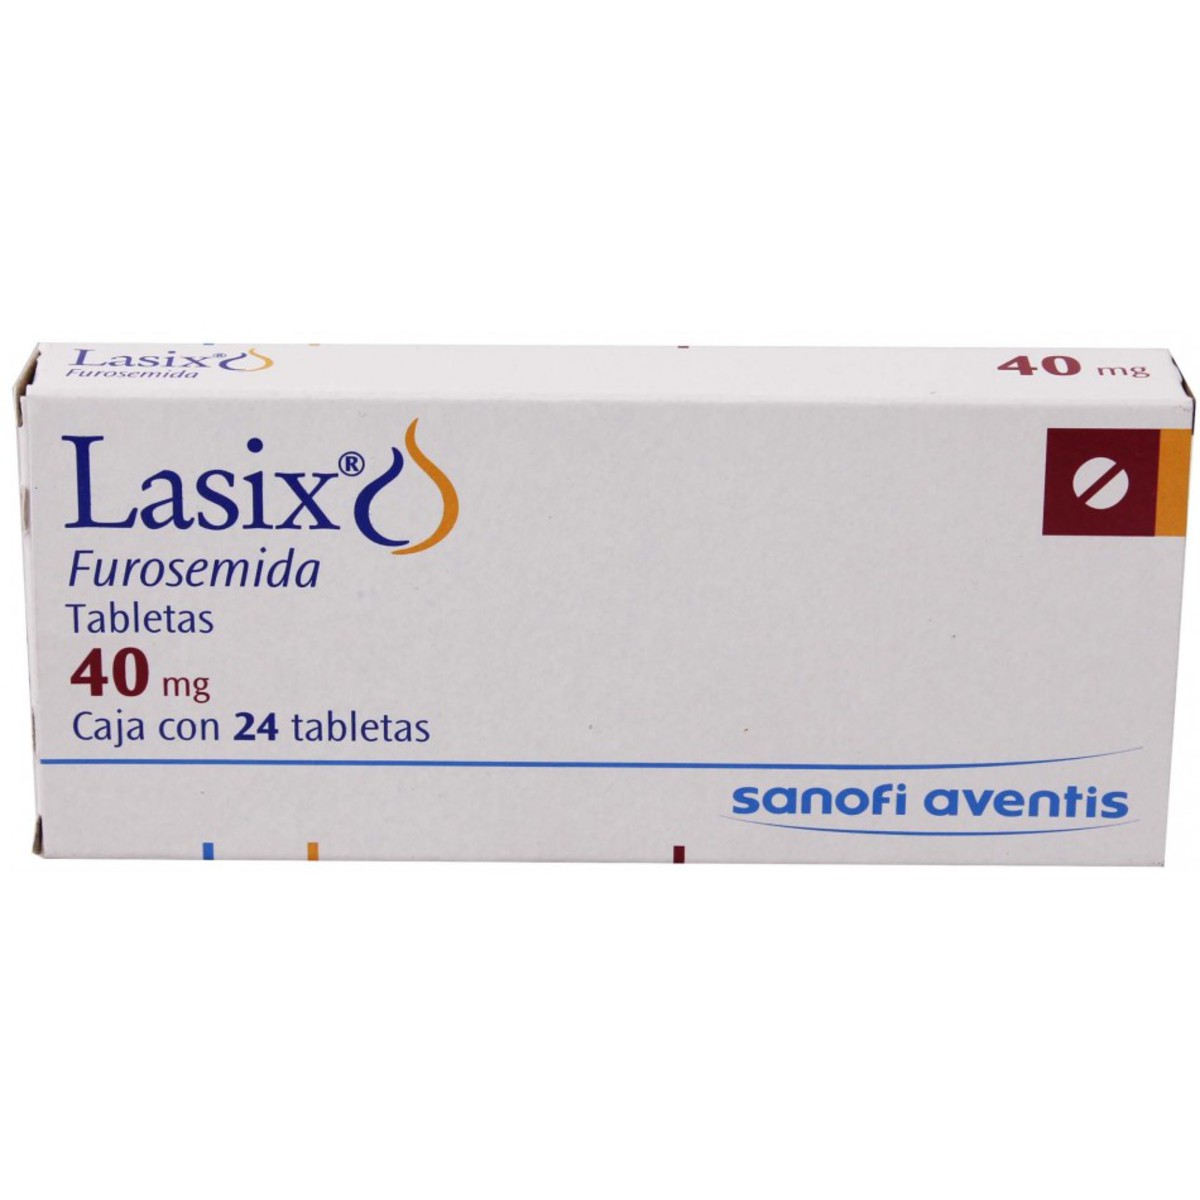 Lasix 40 mg: ¿Qué es y para qué sirve?